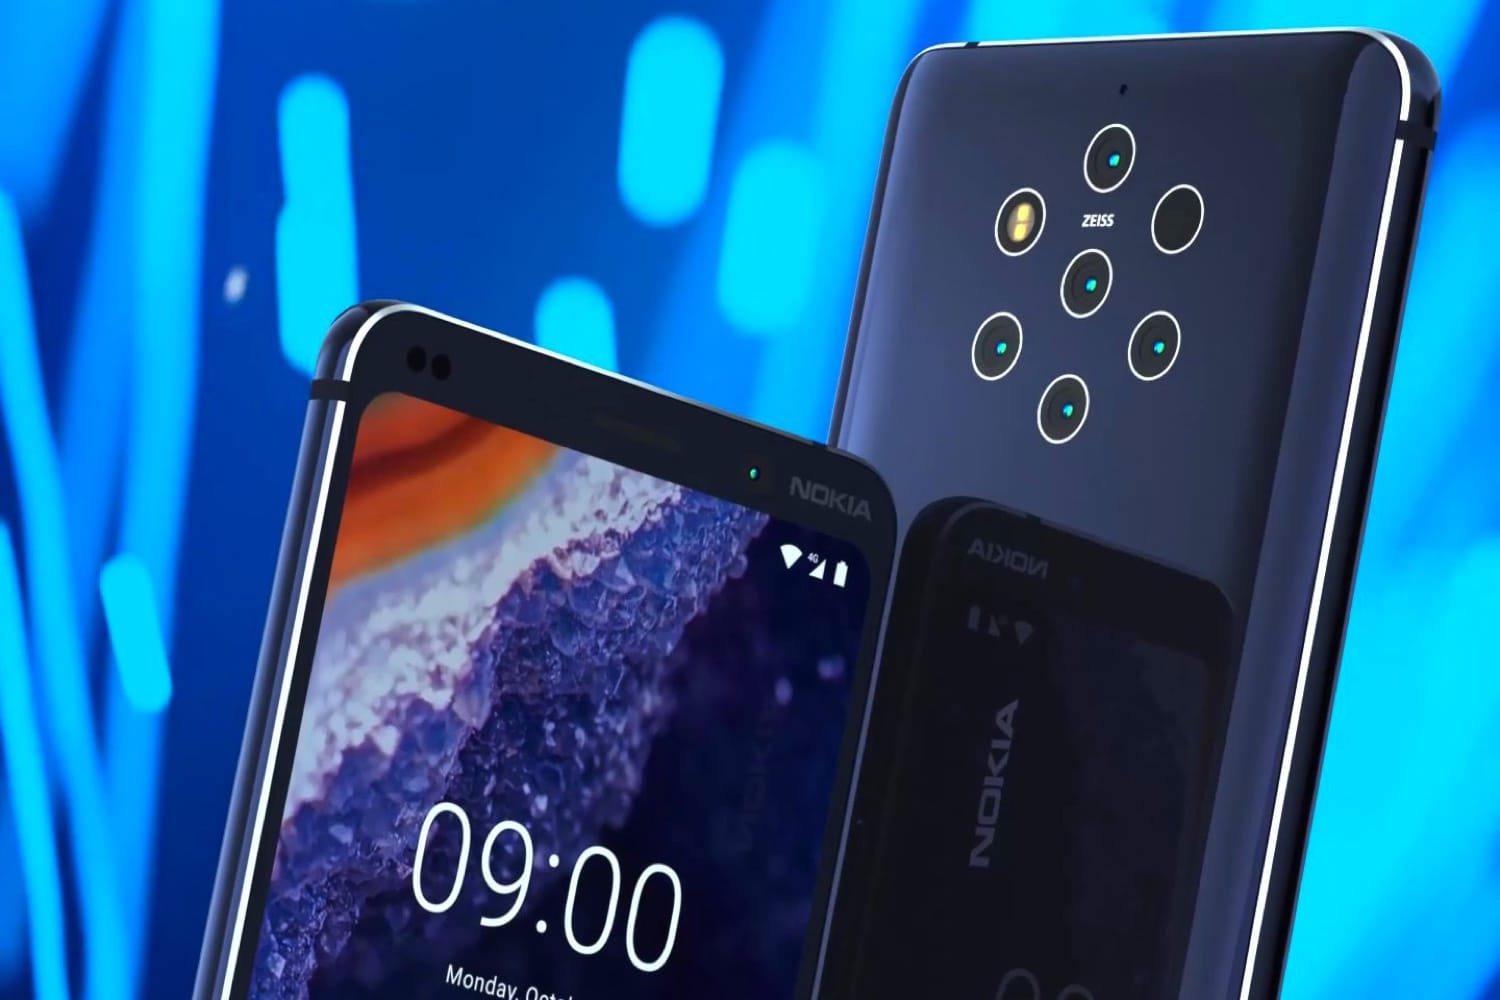 Cập nhật: Nokia 9 PureView sẽ được ra vào tối nay tại MWC 2019, 5 camera phía sau, 2 cảm biến màu sắc và 3 cảm biến đơn sắc